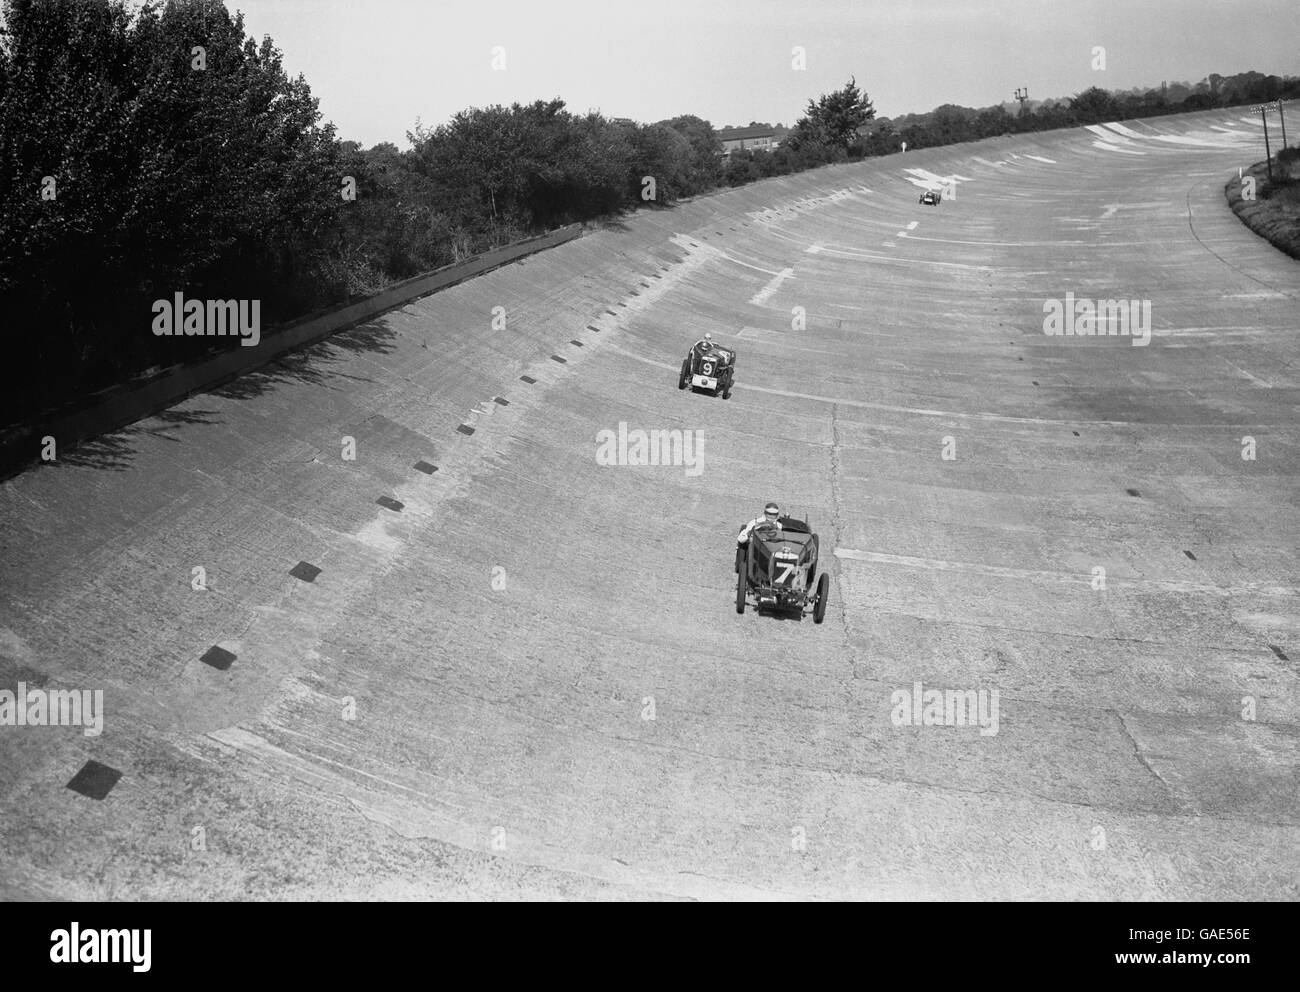 Carreras de Motor - 500 Mile Race - Brooklands. J.C. Elives y S.B. Hailwood en su MG's a velocidad en Brooklands banked circuito. Foto de stock